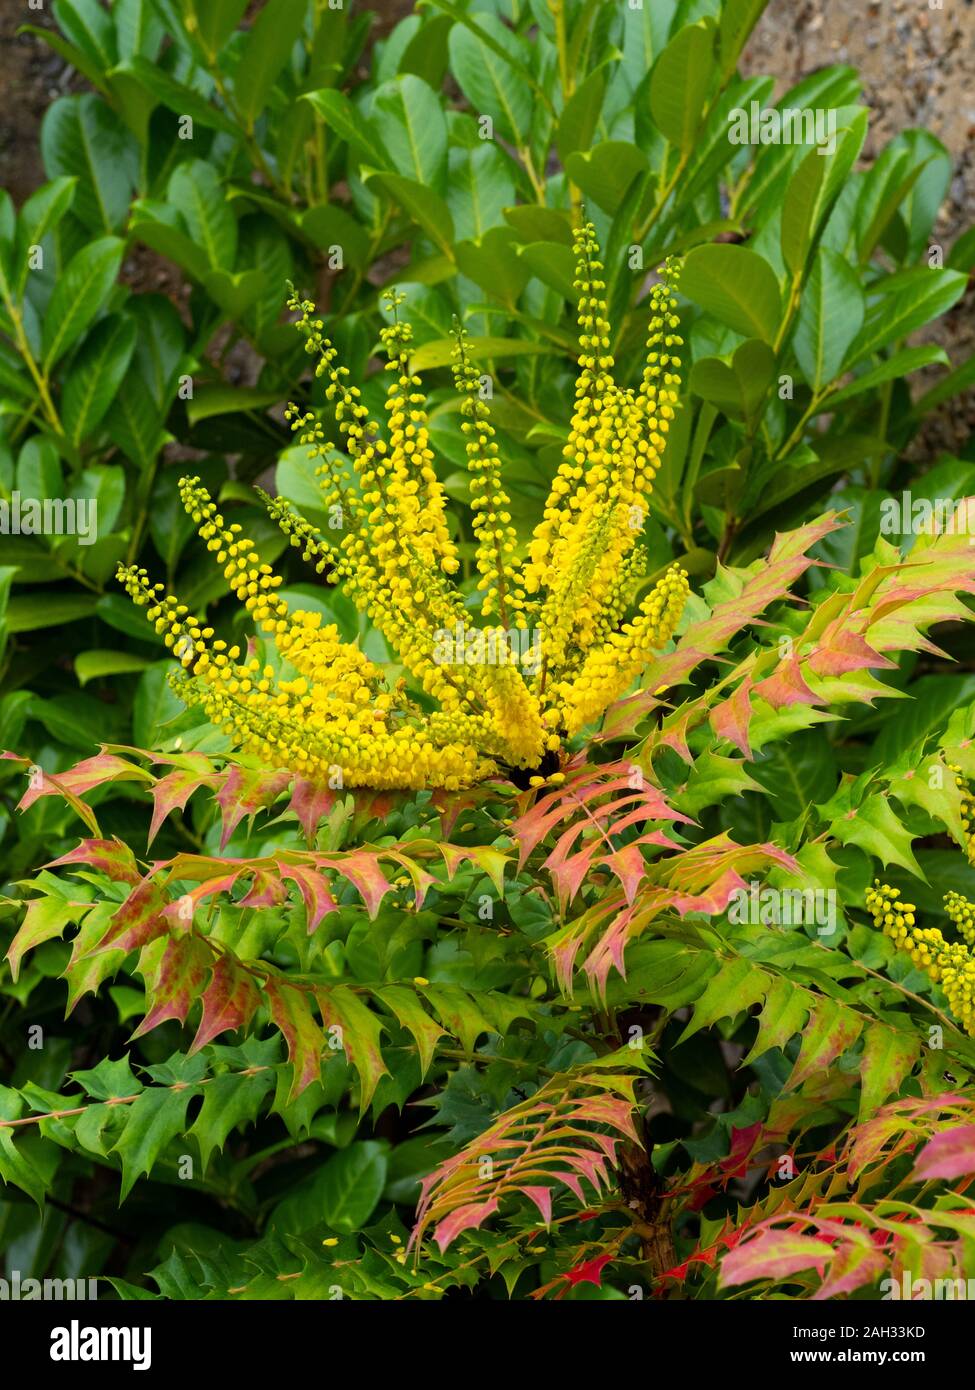 Mahonia japonica, Japanese mahonia. Stock Photo